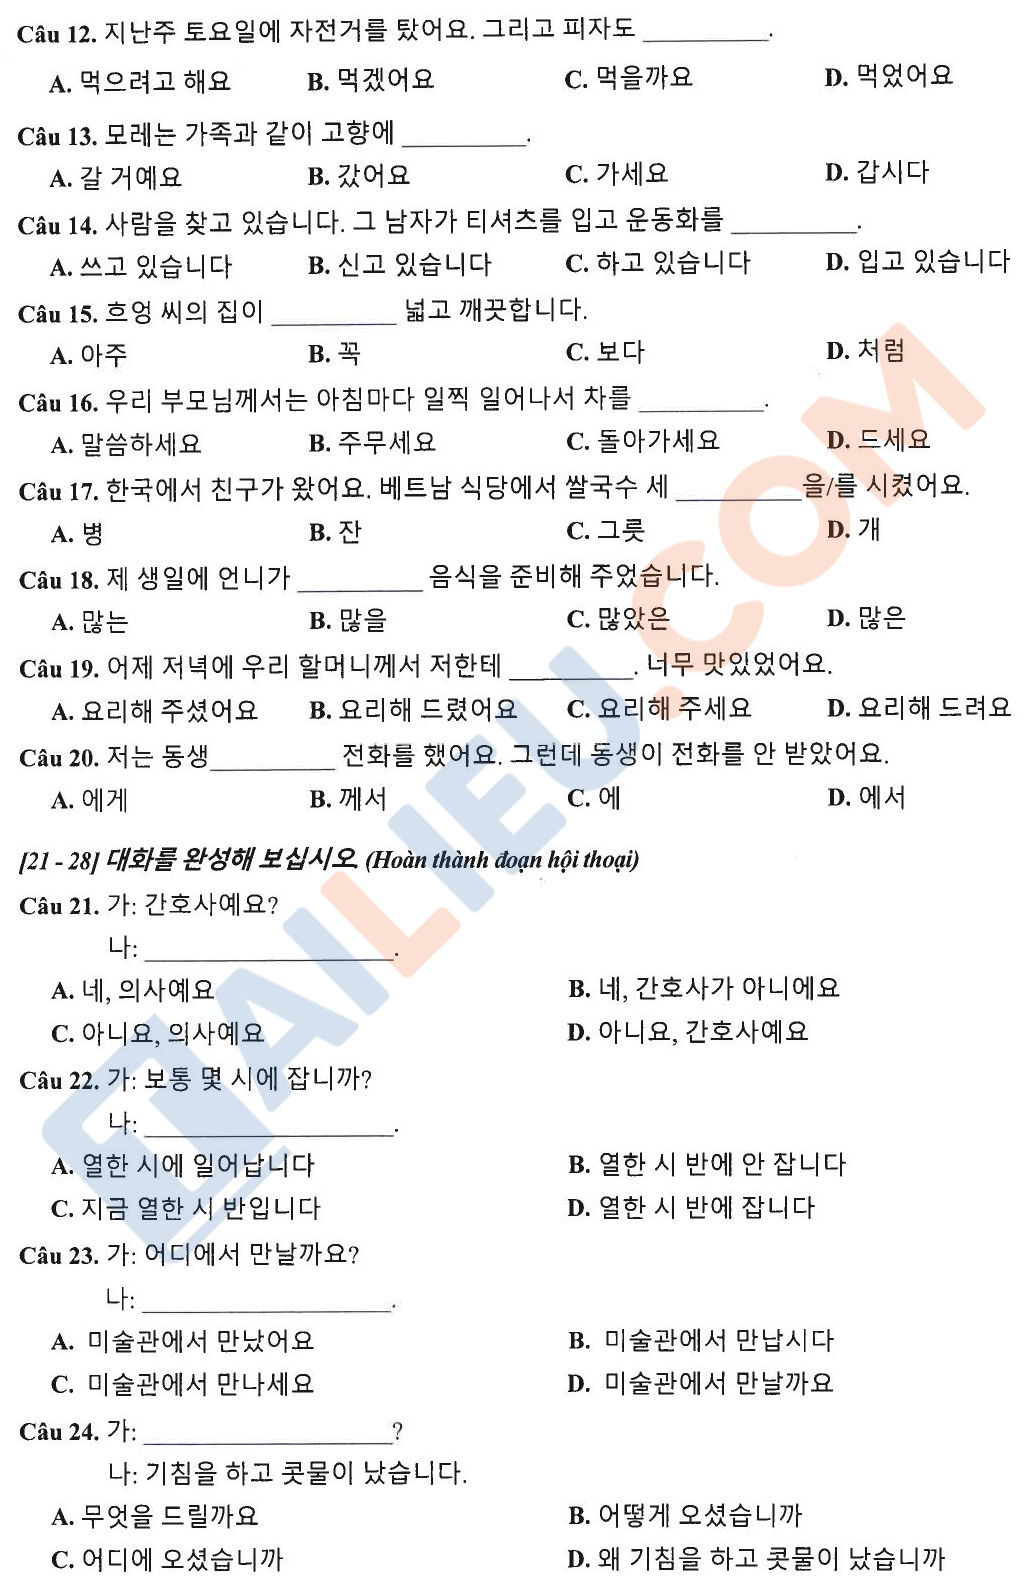 Đề tuyển sinh lớp 10 môn Tiếng Hàn 2023 Hà Nội chính thức